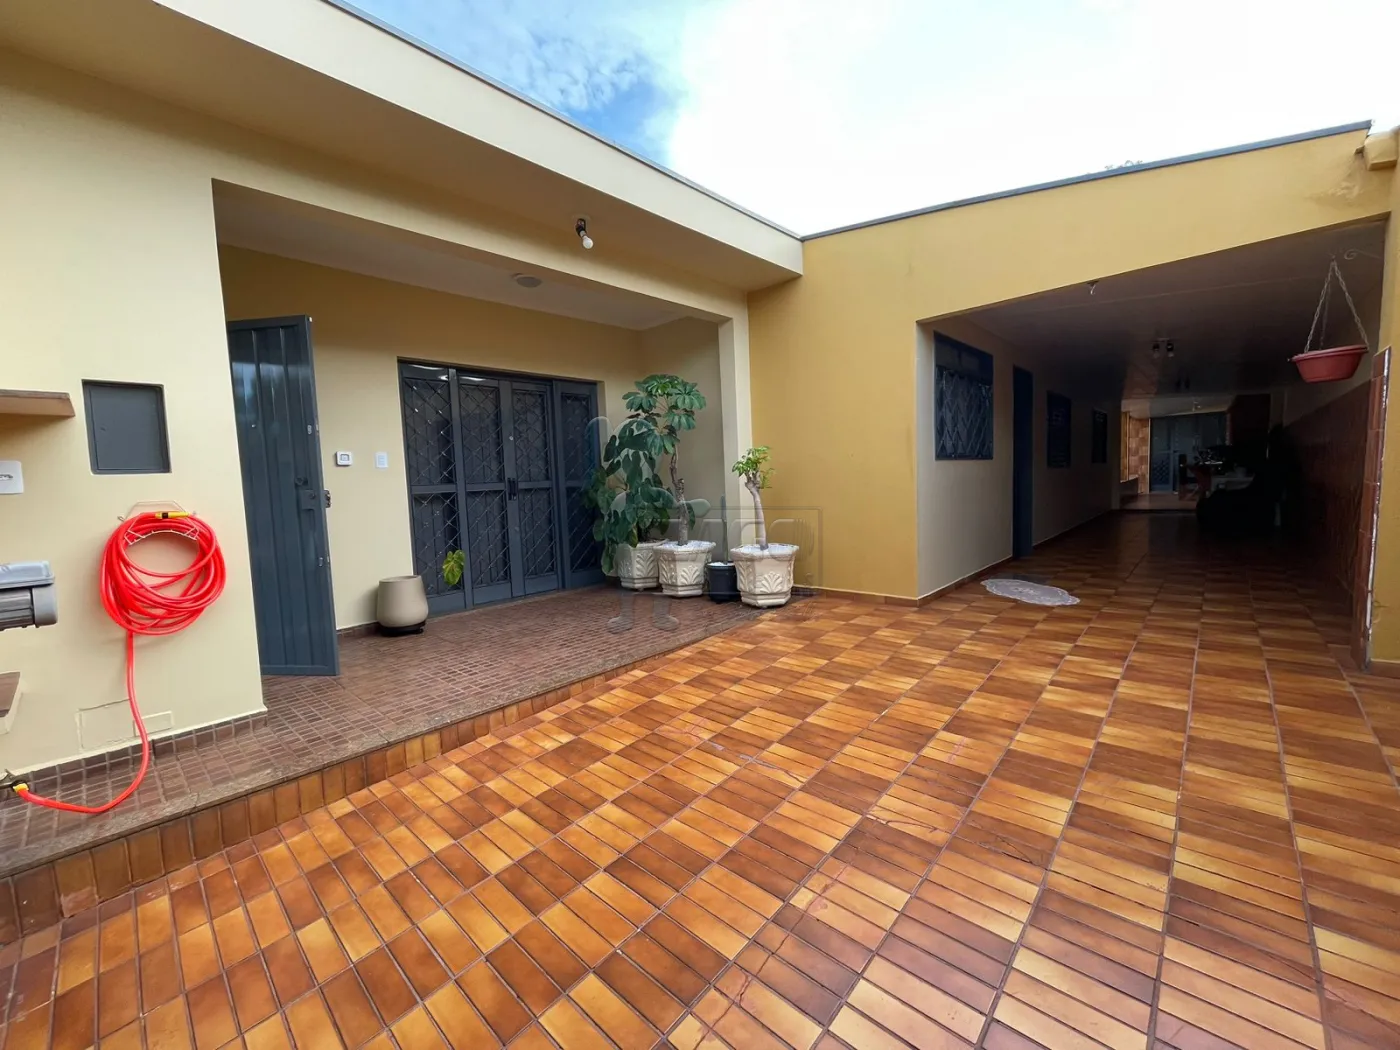 Comprar Casas / Padrão em Ribeirão Preto R$ 400.000,00 - Foto 24